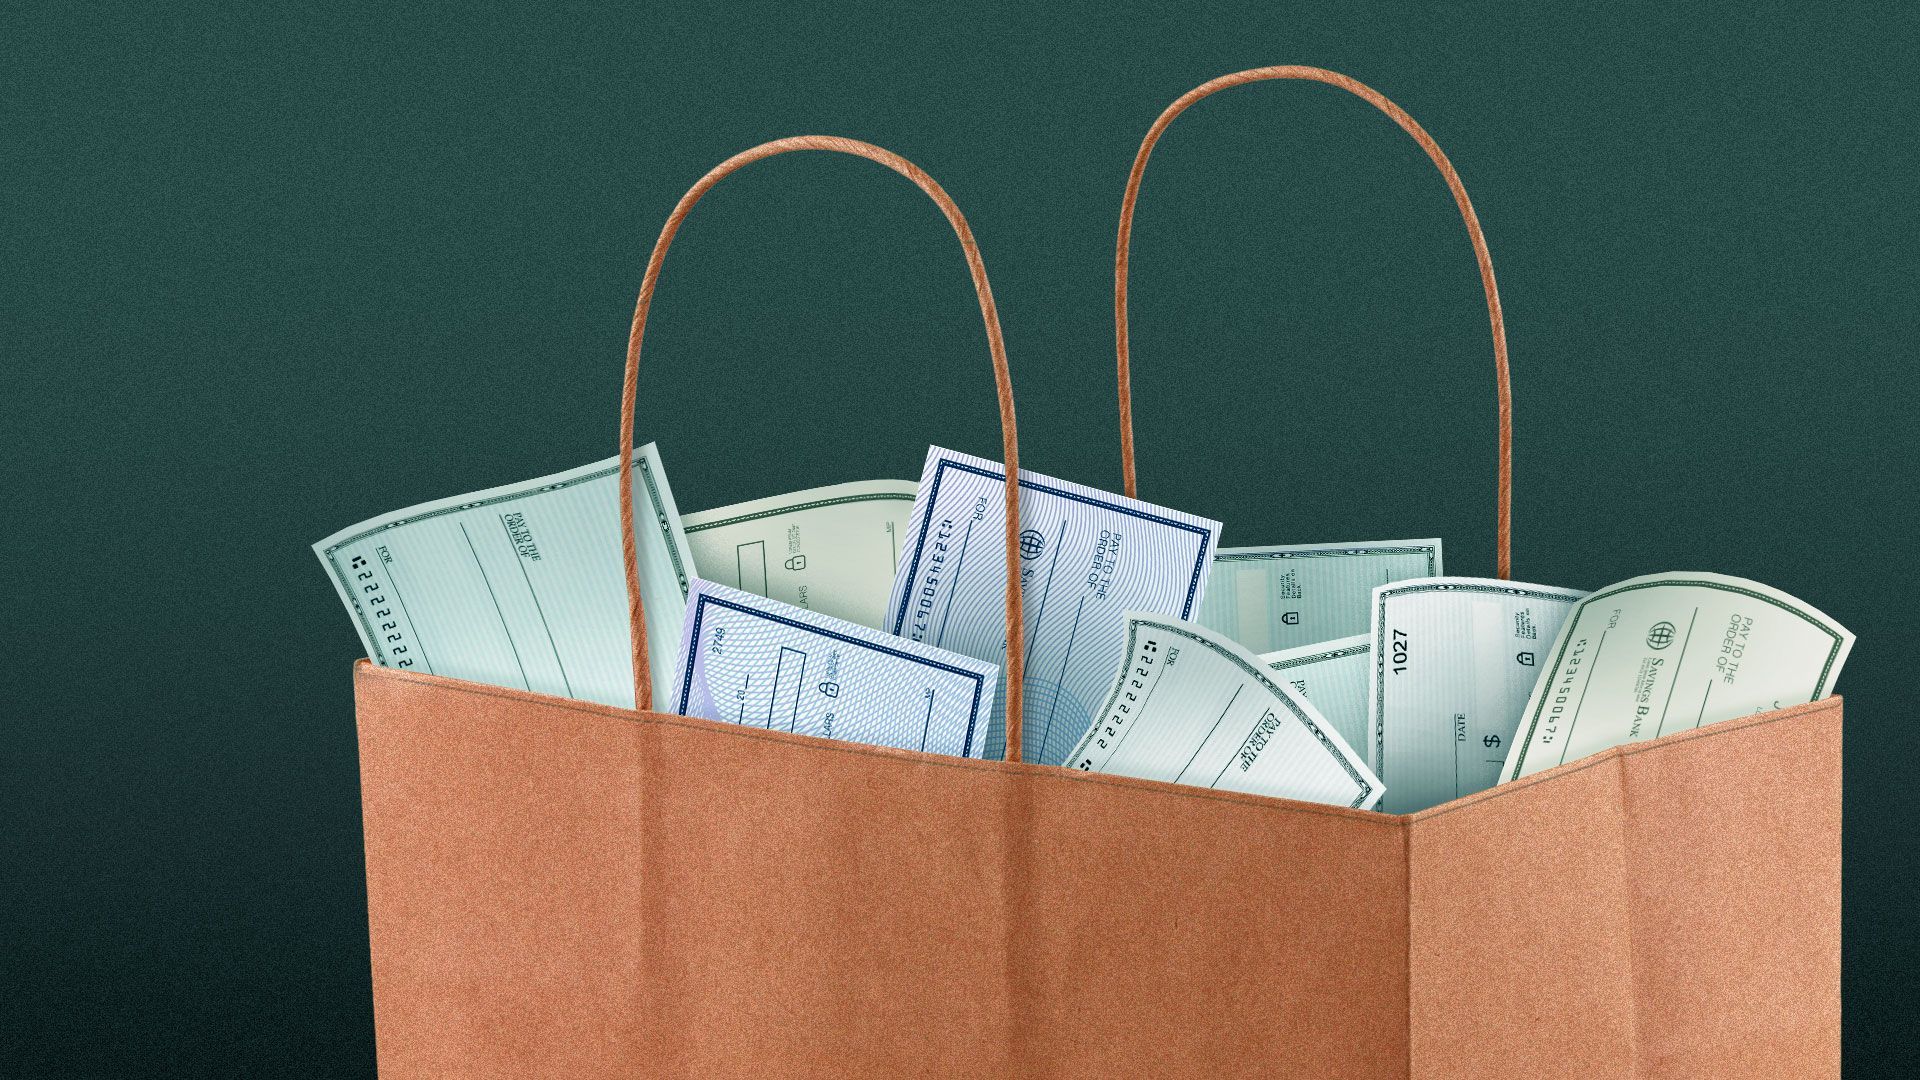 Illustration of a shopping bag full of checks.